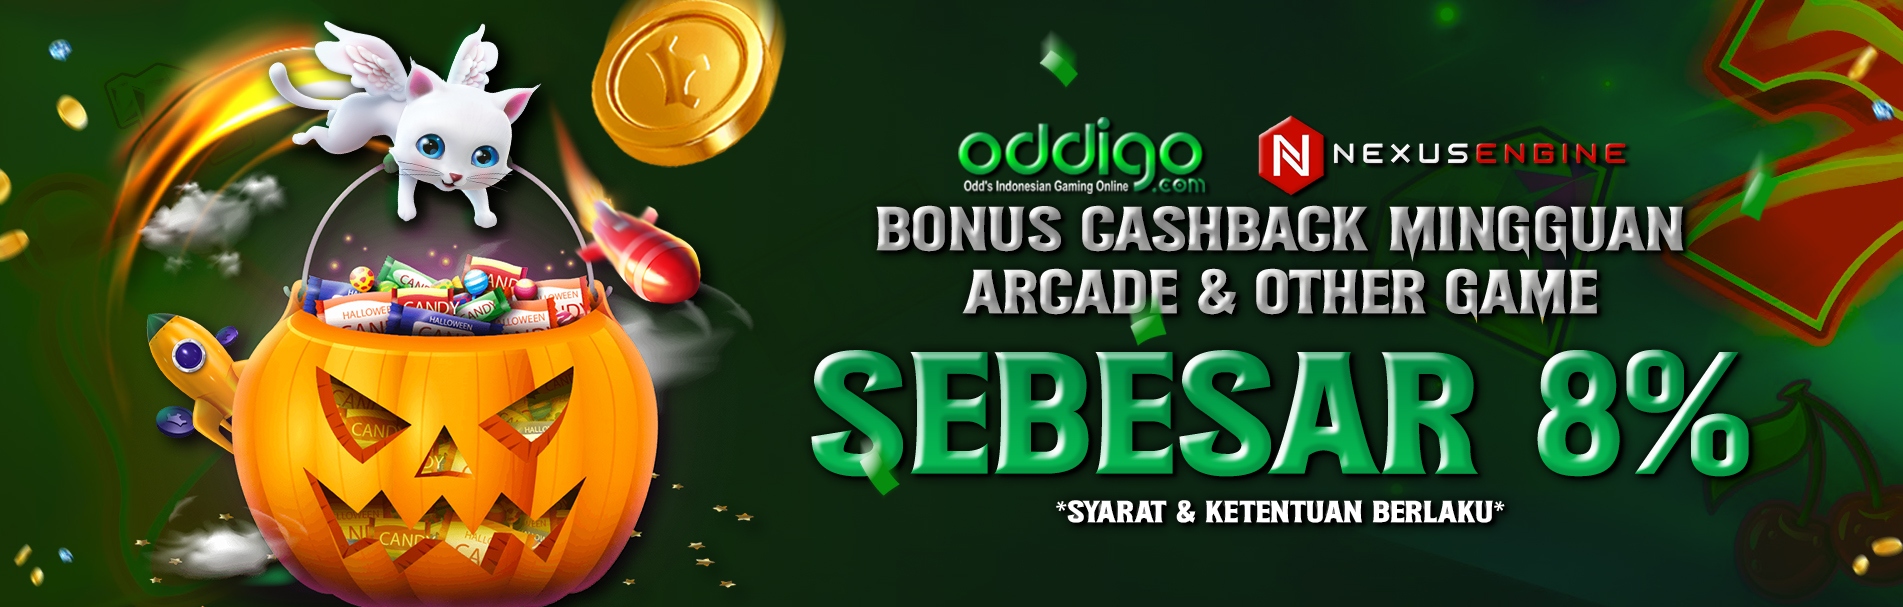 Bonus Cashback Mingguan 8% Arcade & Other Game